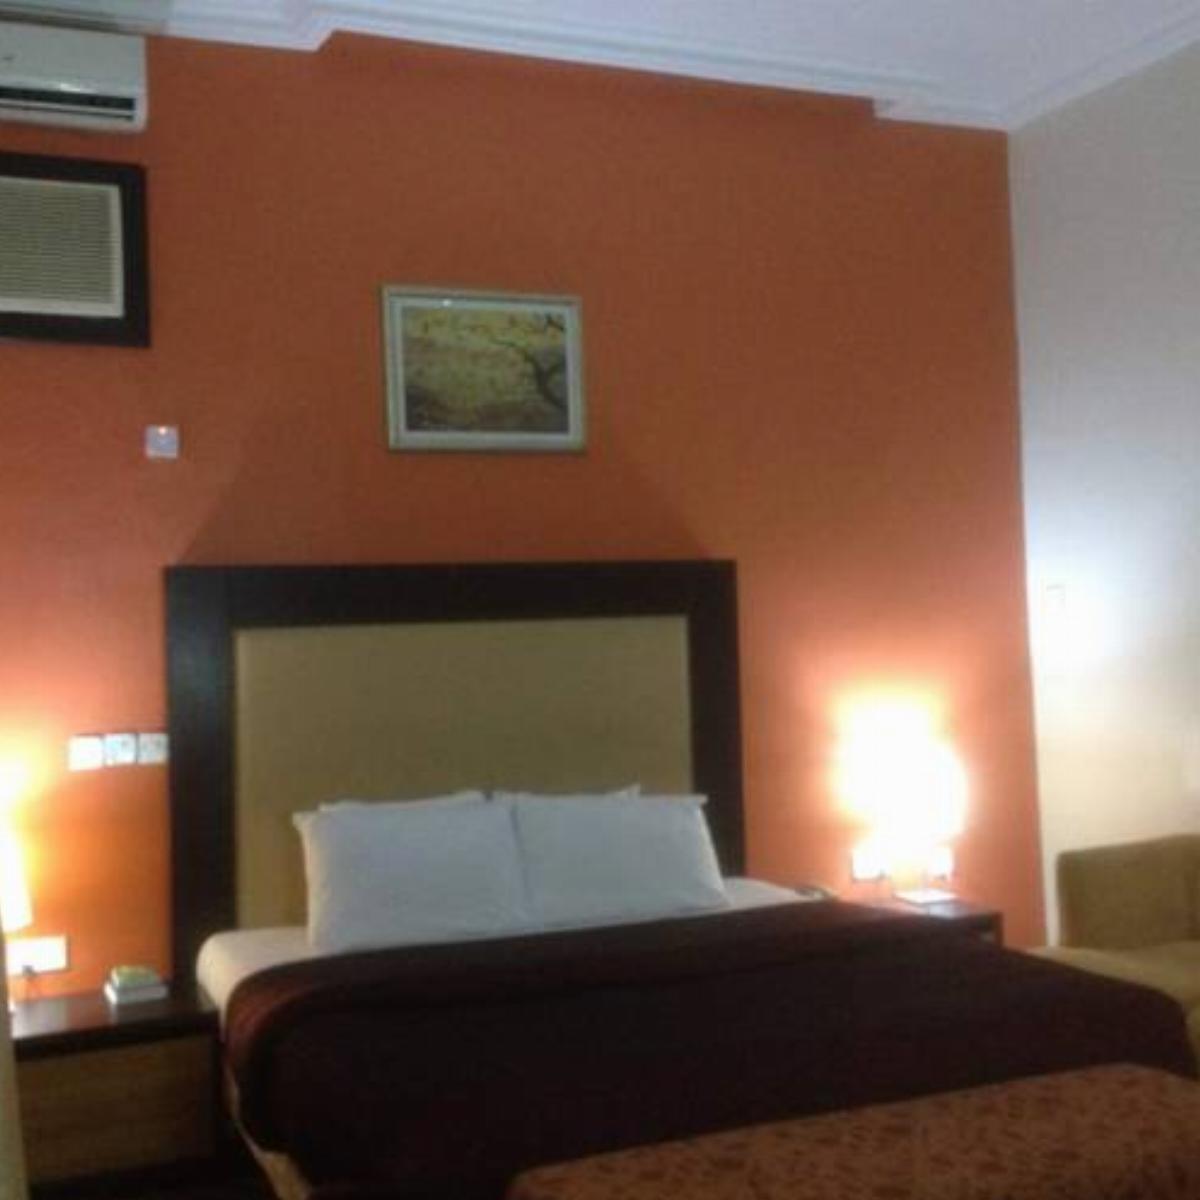 The Hotel Properties Ltd Hotel Enugu Nigeria